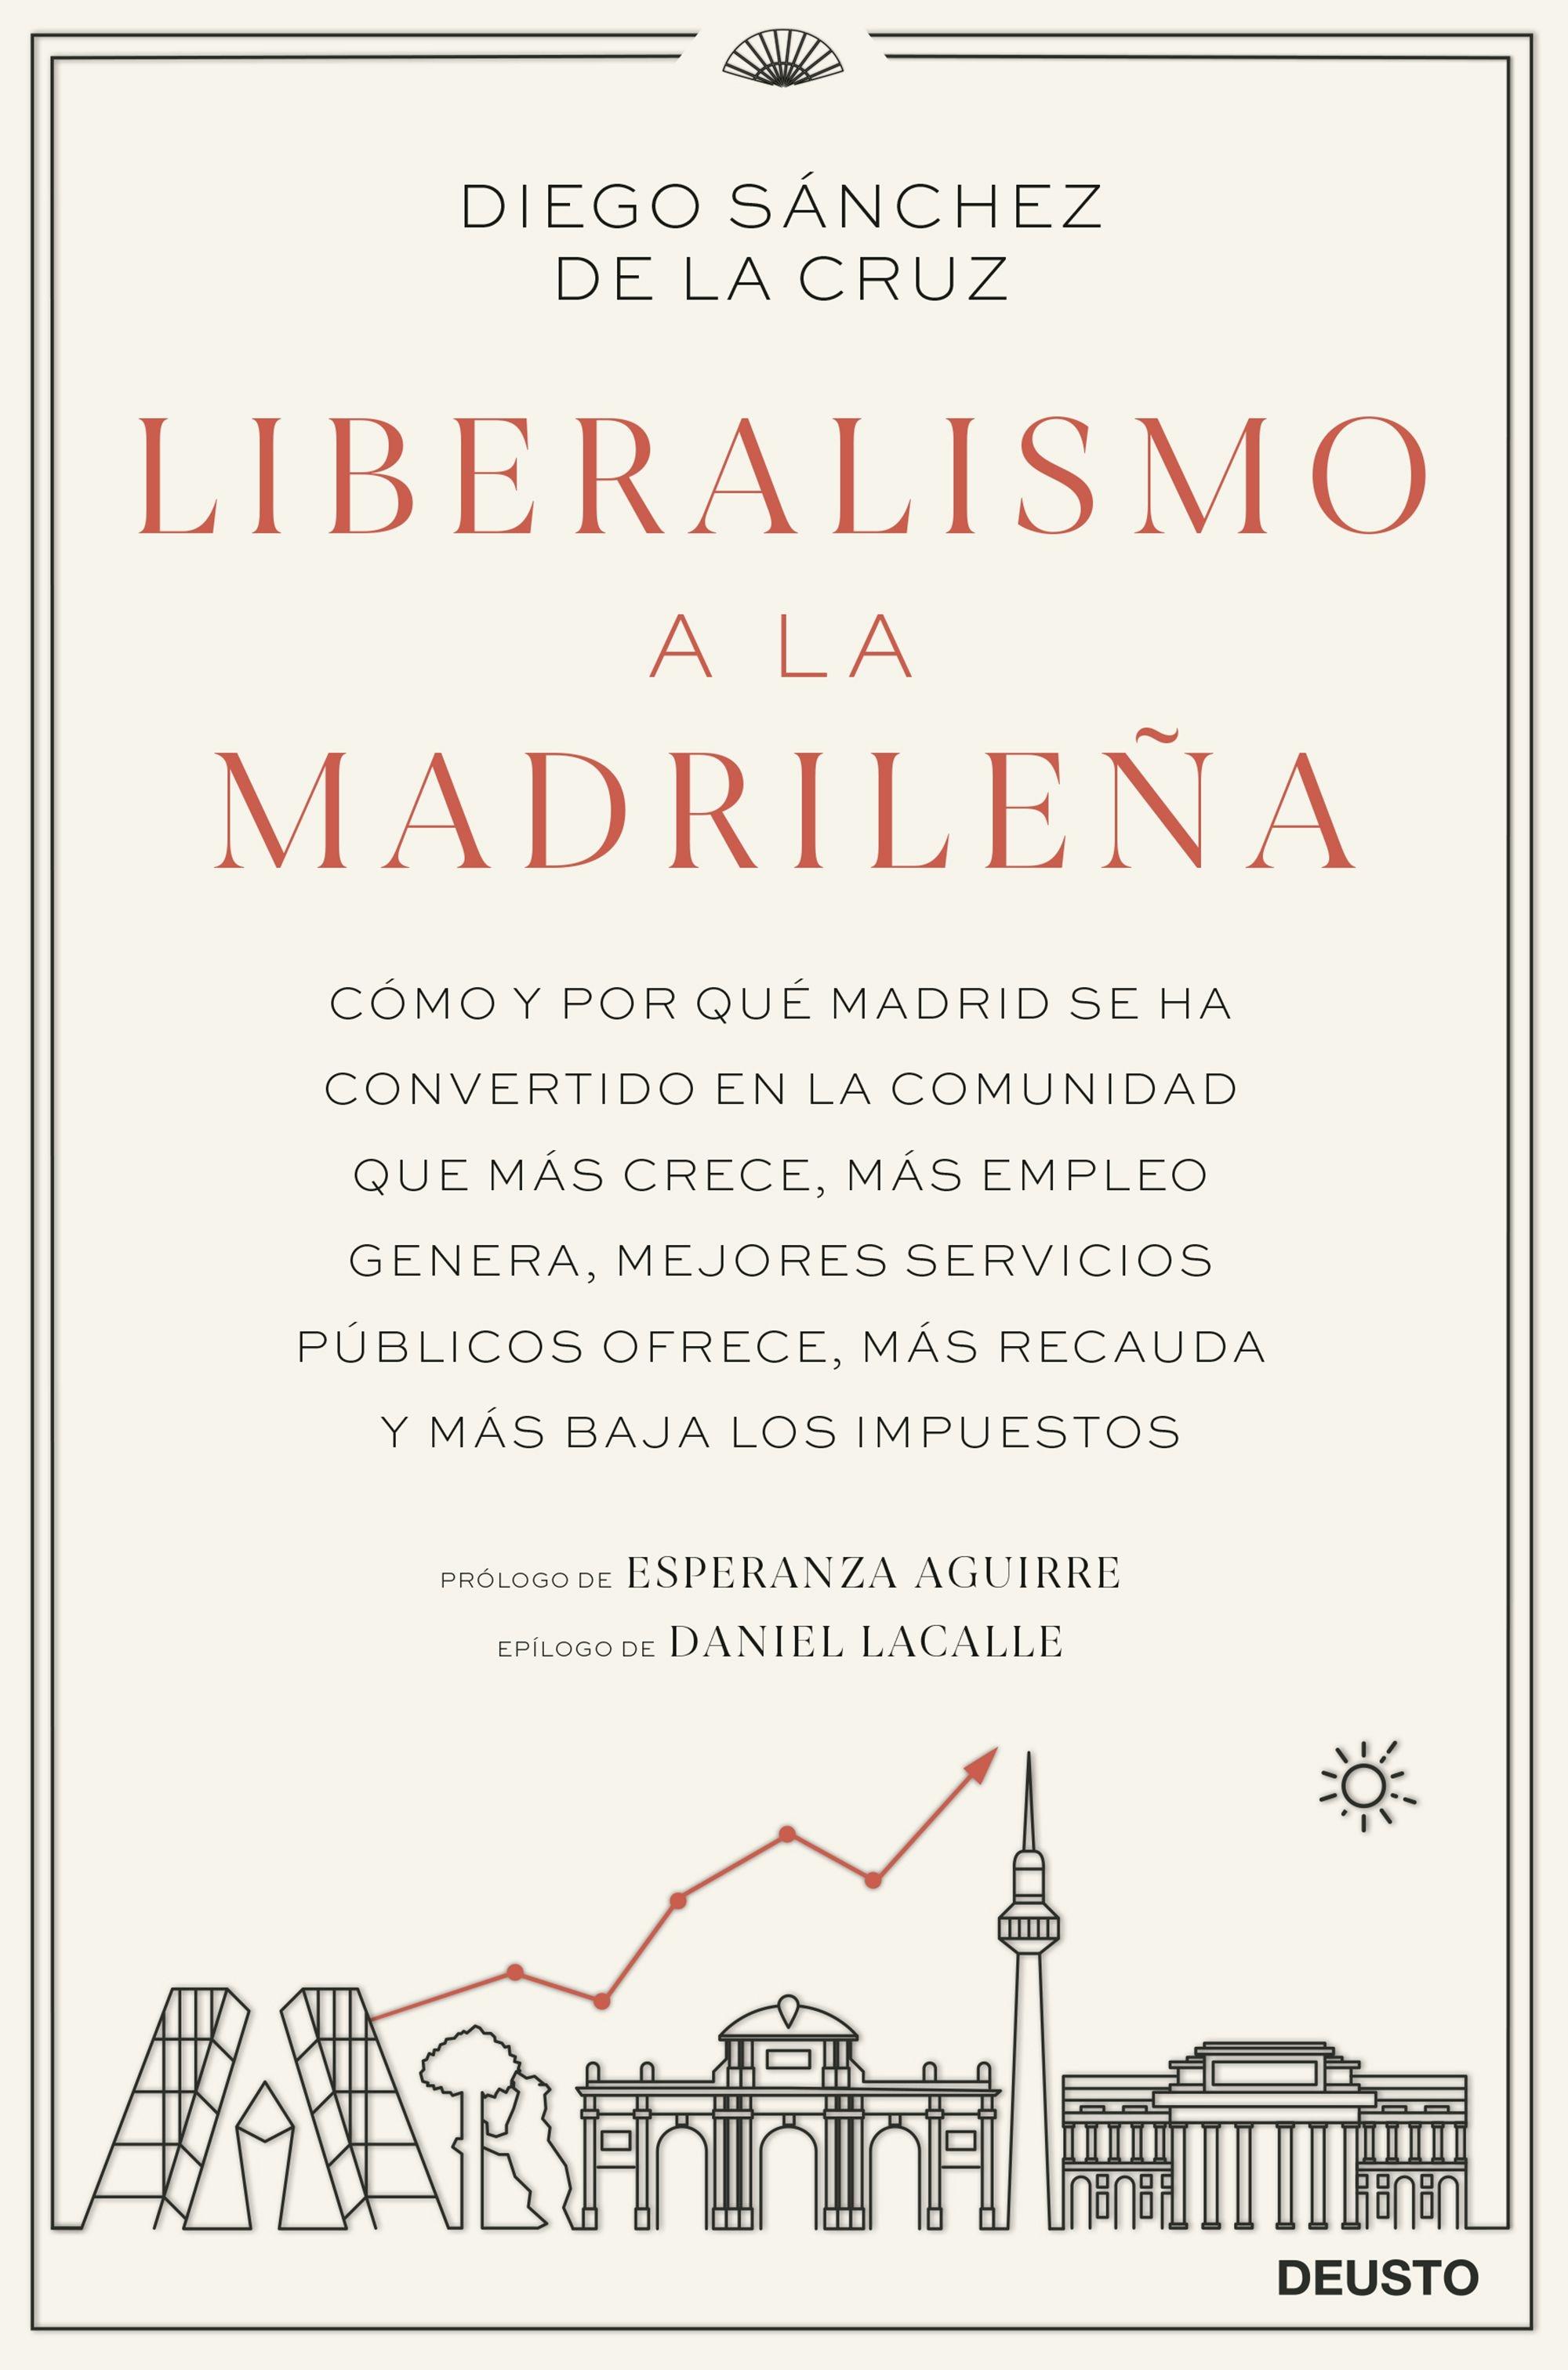 Liberalismo a la madrileña "Cómo y por qué Madrid se ha convertido en la comunidad que más crece, má"